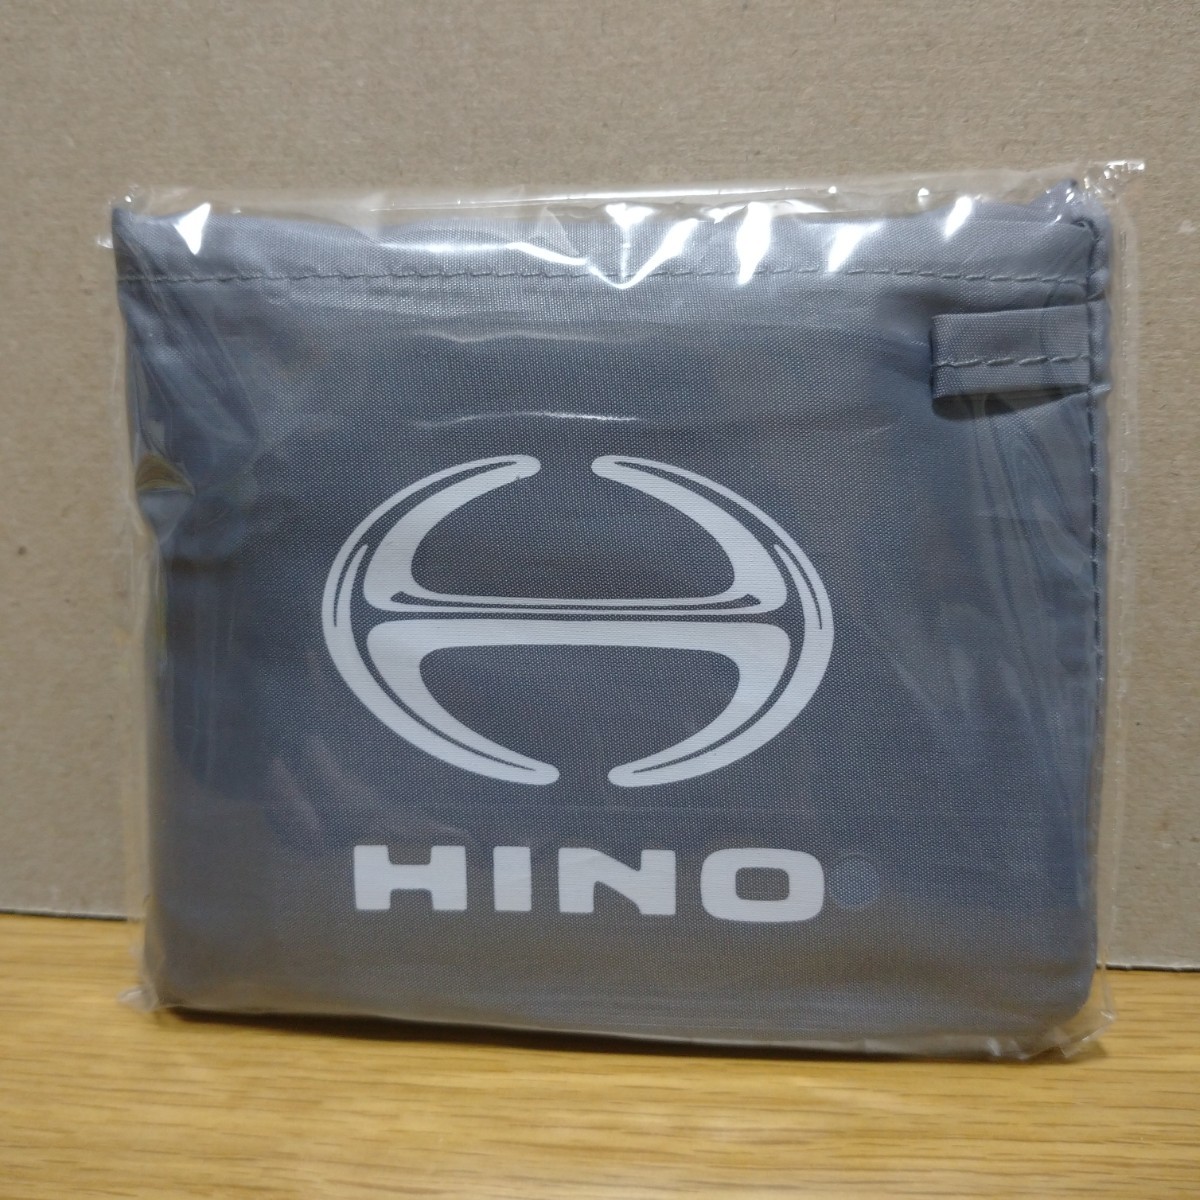  saec HINO Dutro эко-сумка сумка место хранения dutro товары коллекция эмблема Logo не продается Novelty ограничение bag collection ②